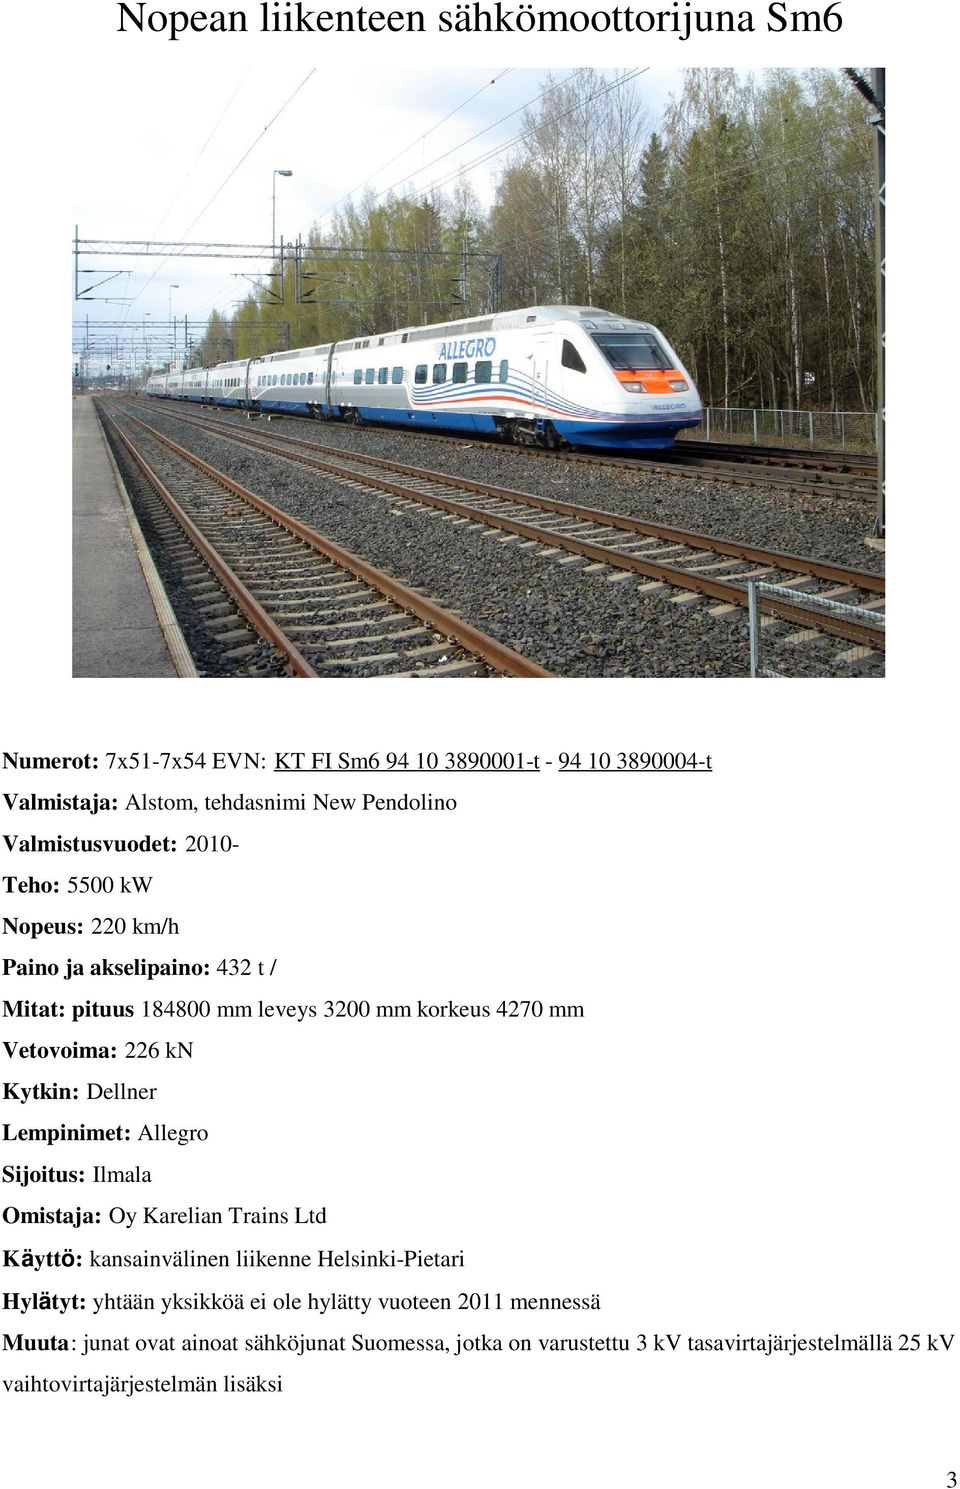 Kytkin: Dellner Lempinimet: Allegro Sijoitus: Ilmala Omistaja: Oy Karelian Trains Ltd Käyttö: kansainvälinen liikenne Helsinki-Pietari Hylätyt: yhtään yksikköä